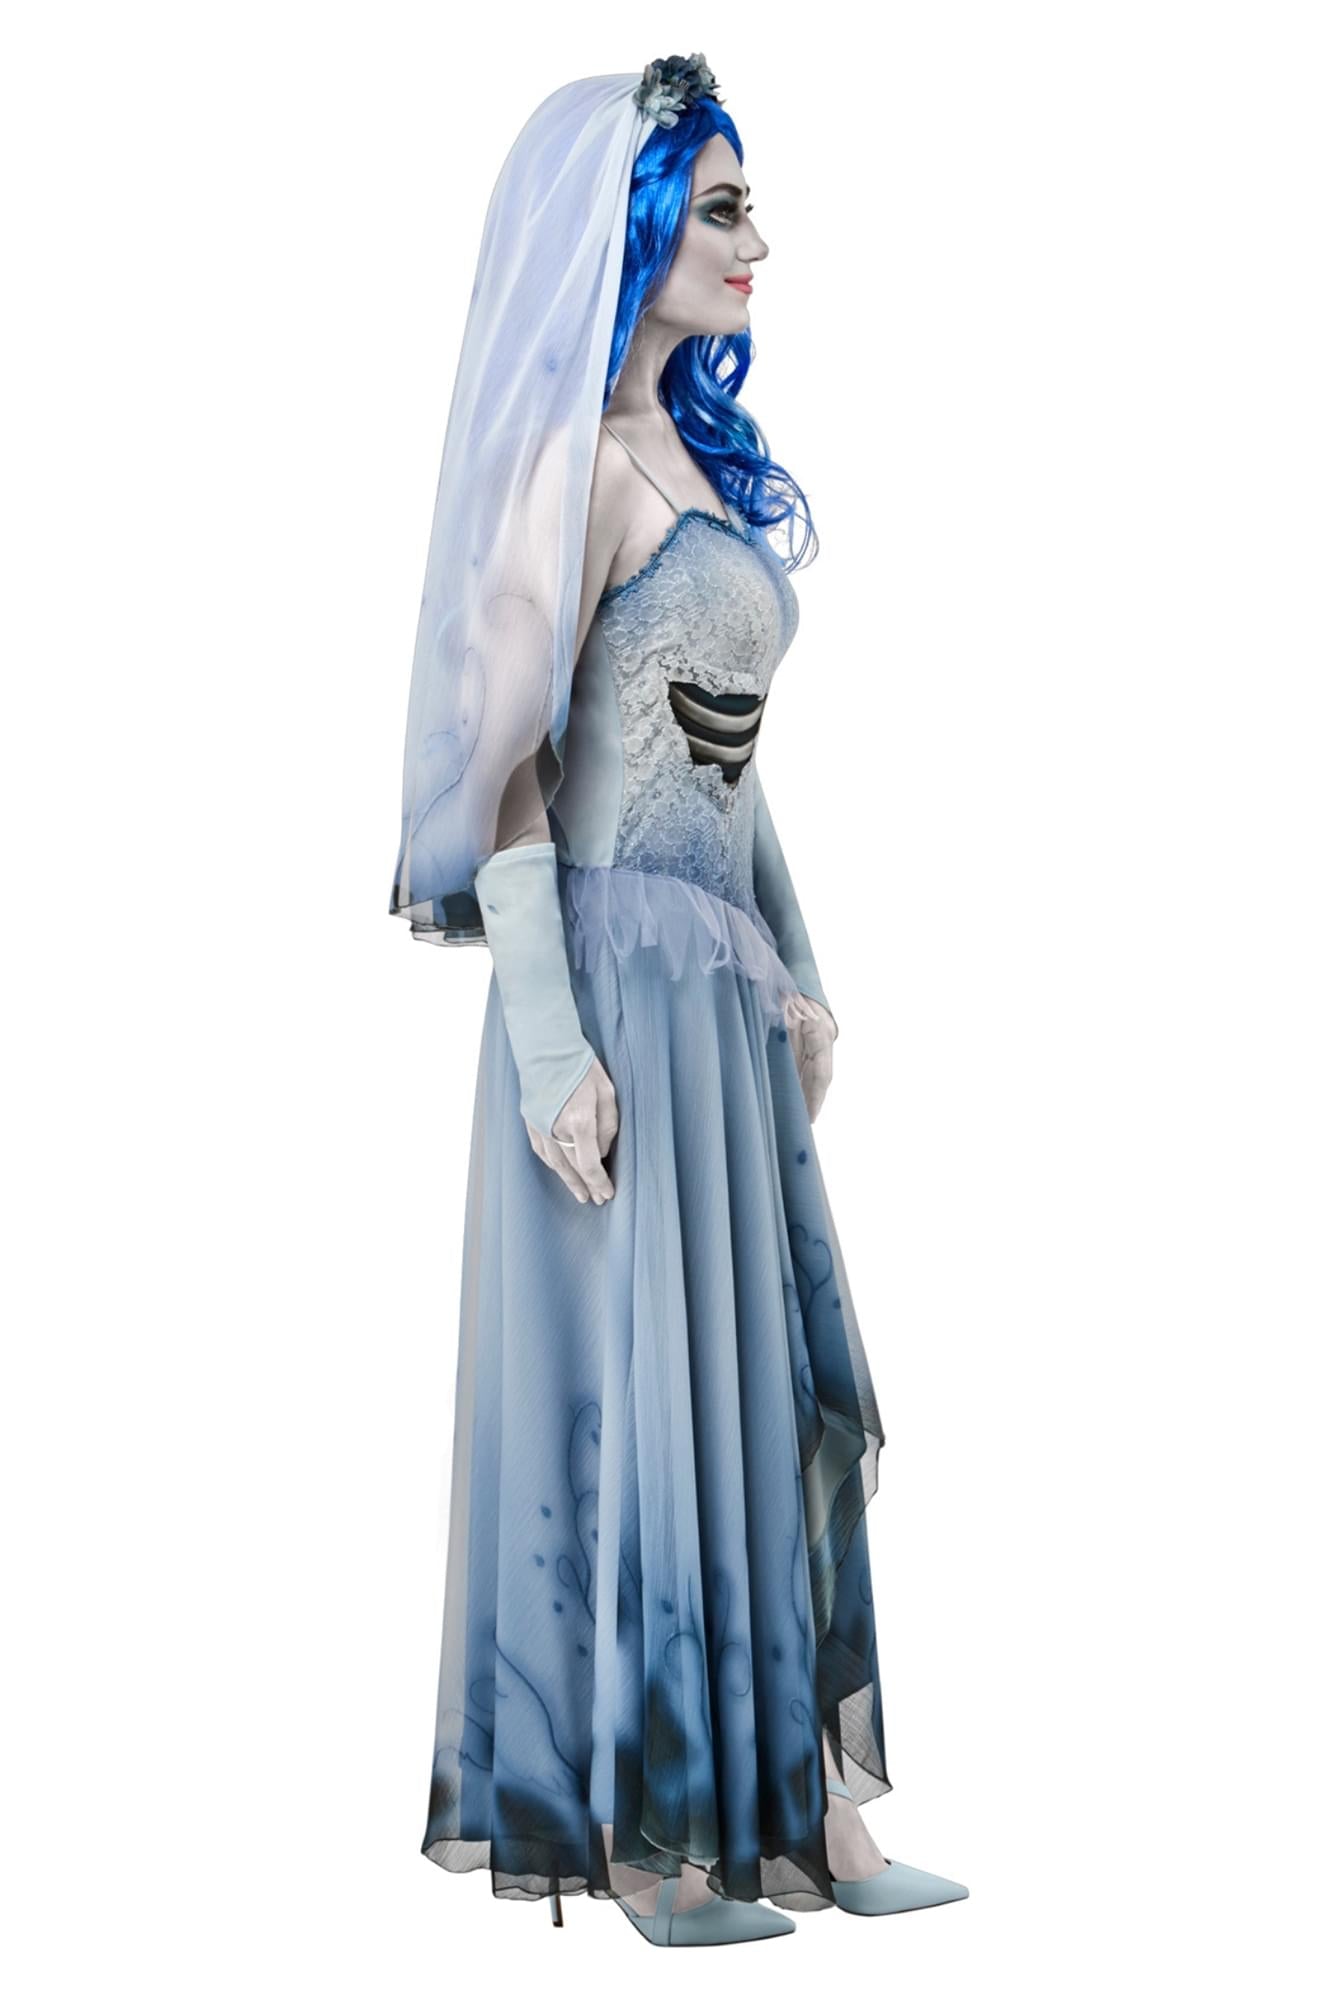 Corpse bride costume 12